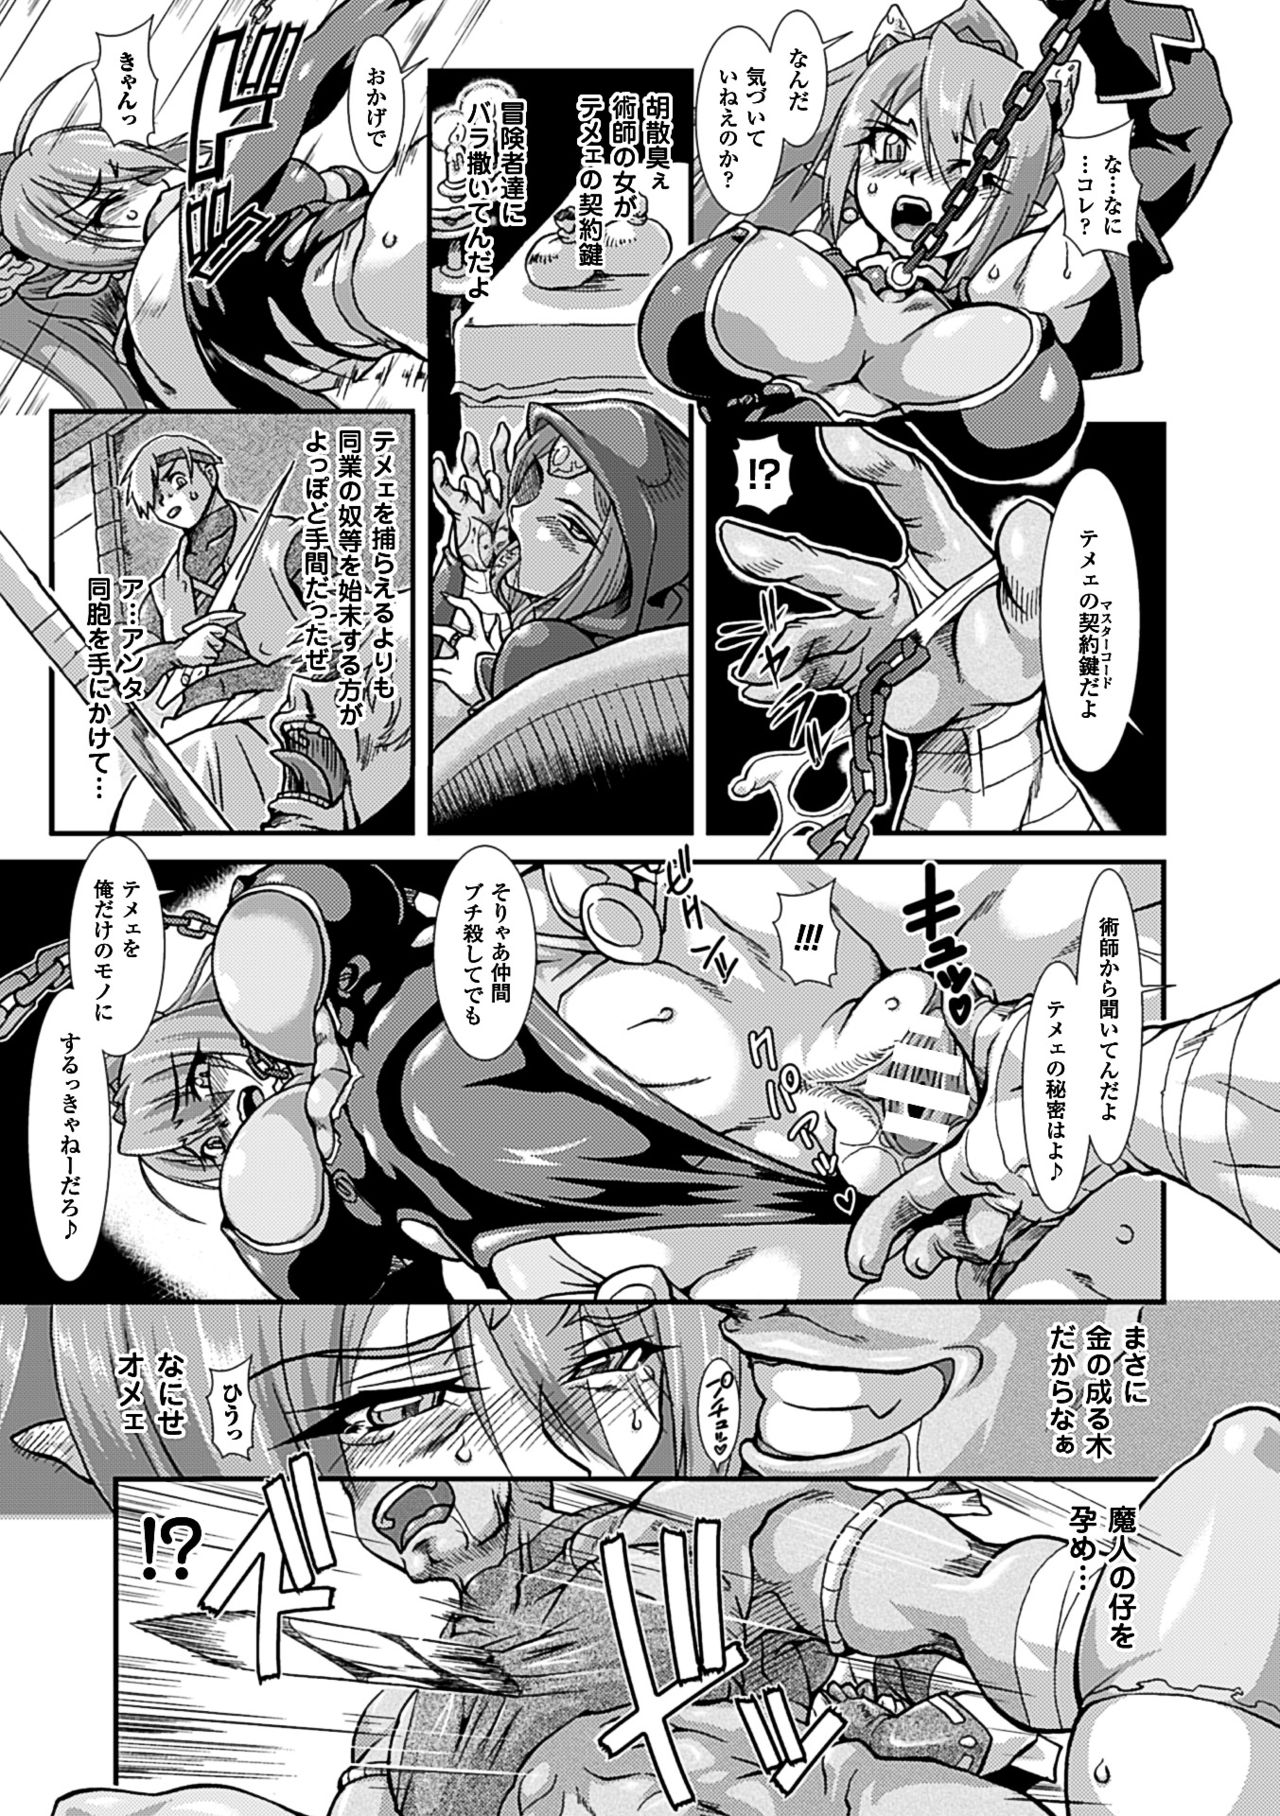 2Dコミックマガジン「かららくめきゅうダンジョンにこだまするめすの共生Vol。 3